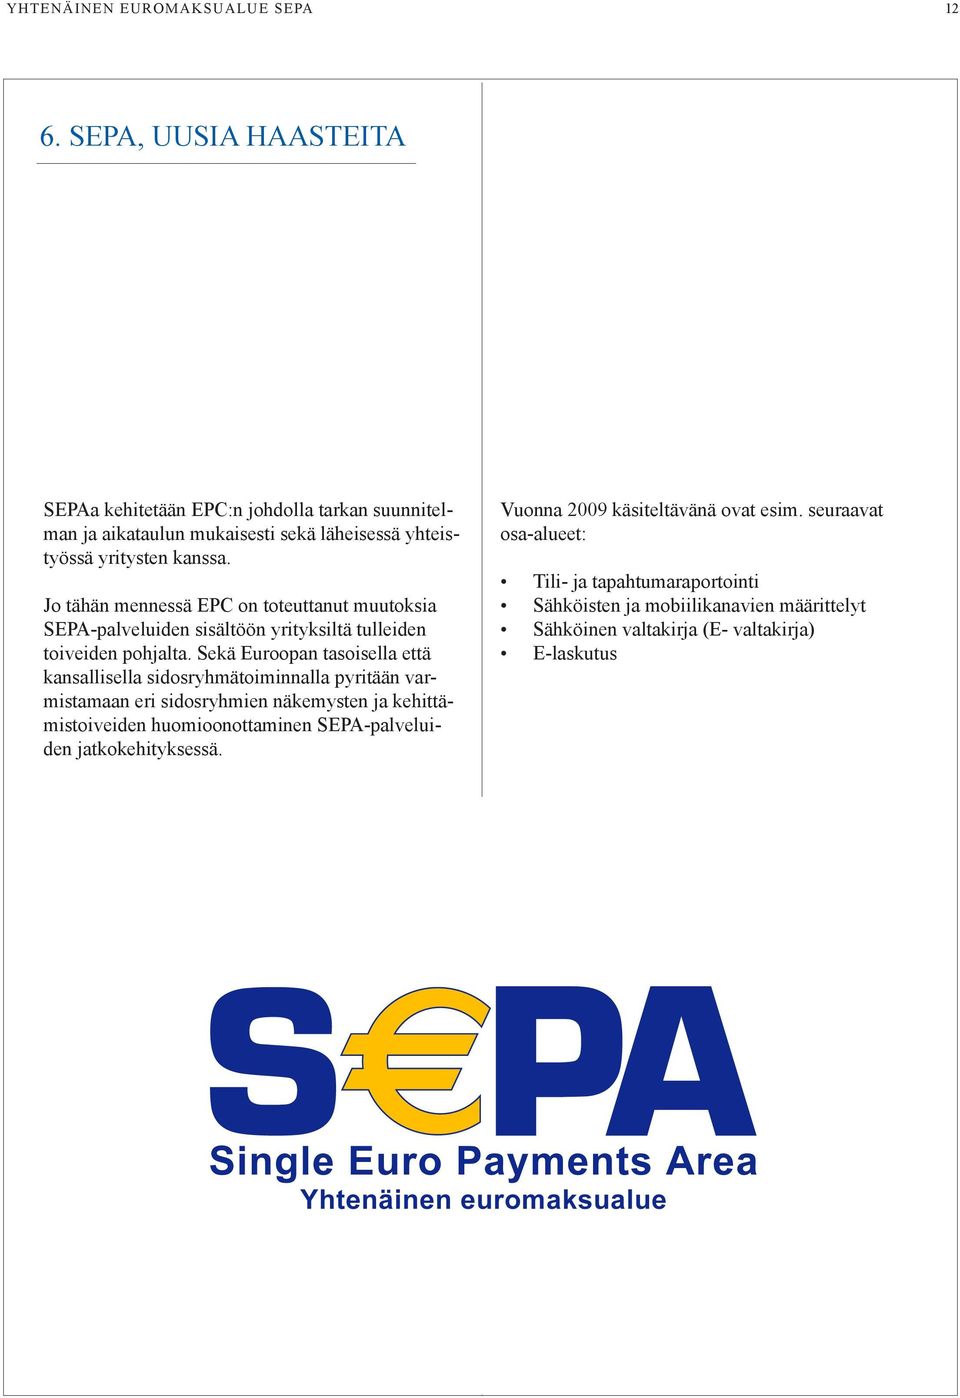 Jo tähän mennessä EPC on toteuttanut muutoksia SEPA-palveluiden sisältöön yrityksiltä tulleiden toiveiden pohjalta.